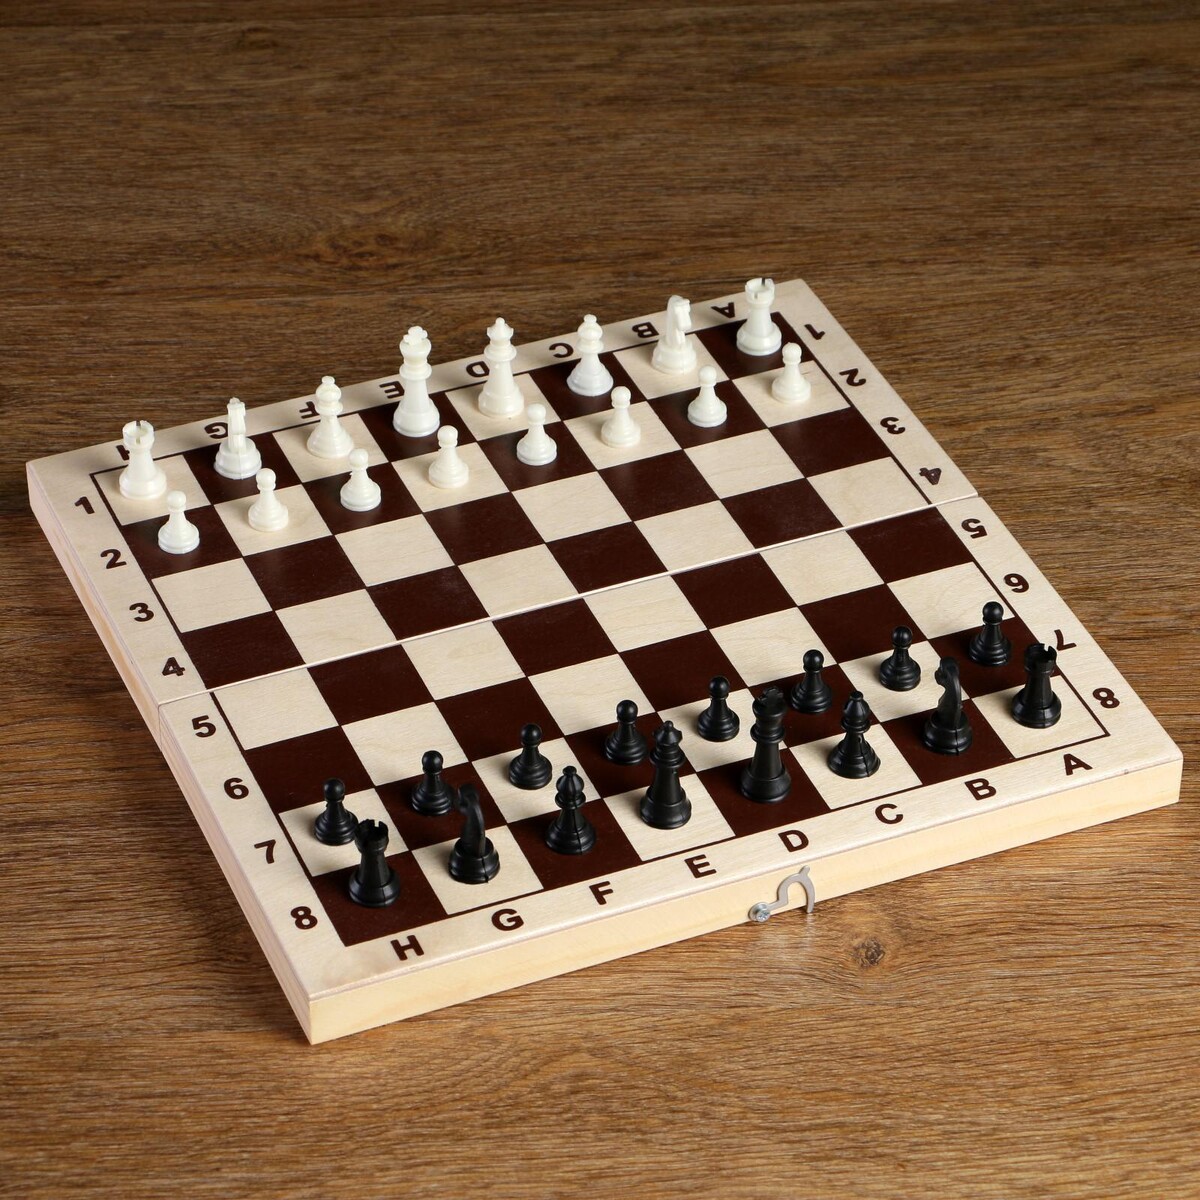 Шахматные фигуры, пластик, король h-4.2 см, пешка h-2 см шахматные фигуры гроссмейстерские